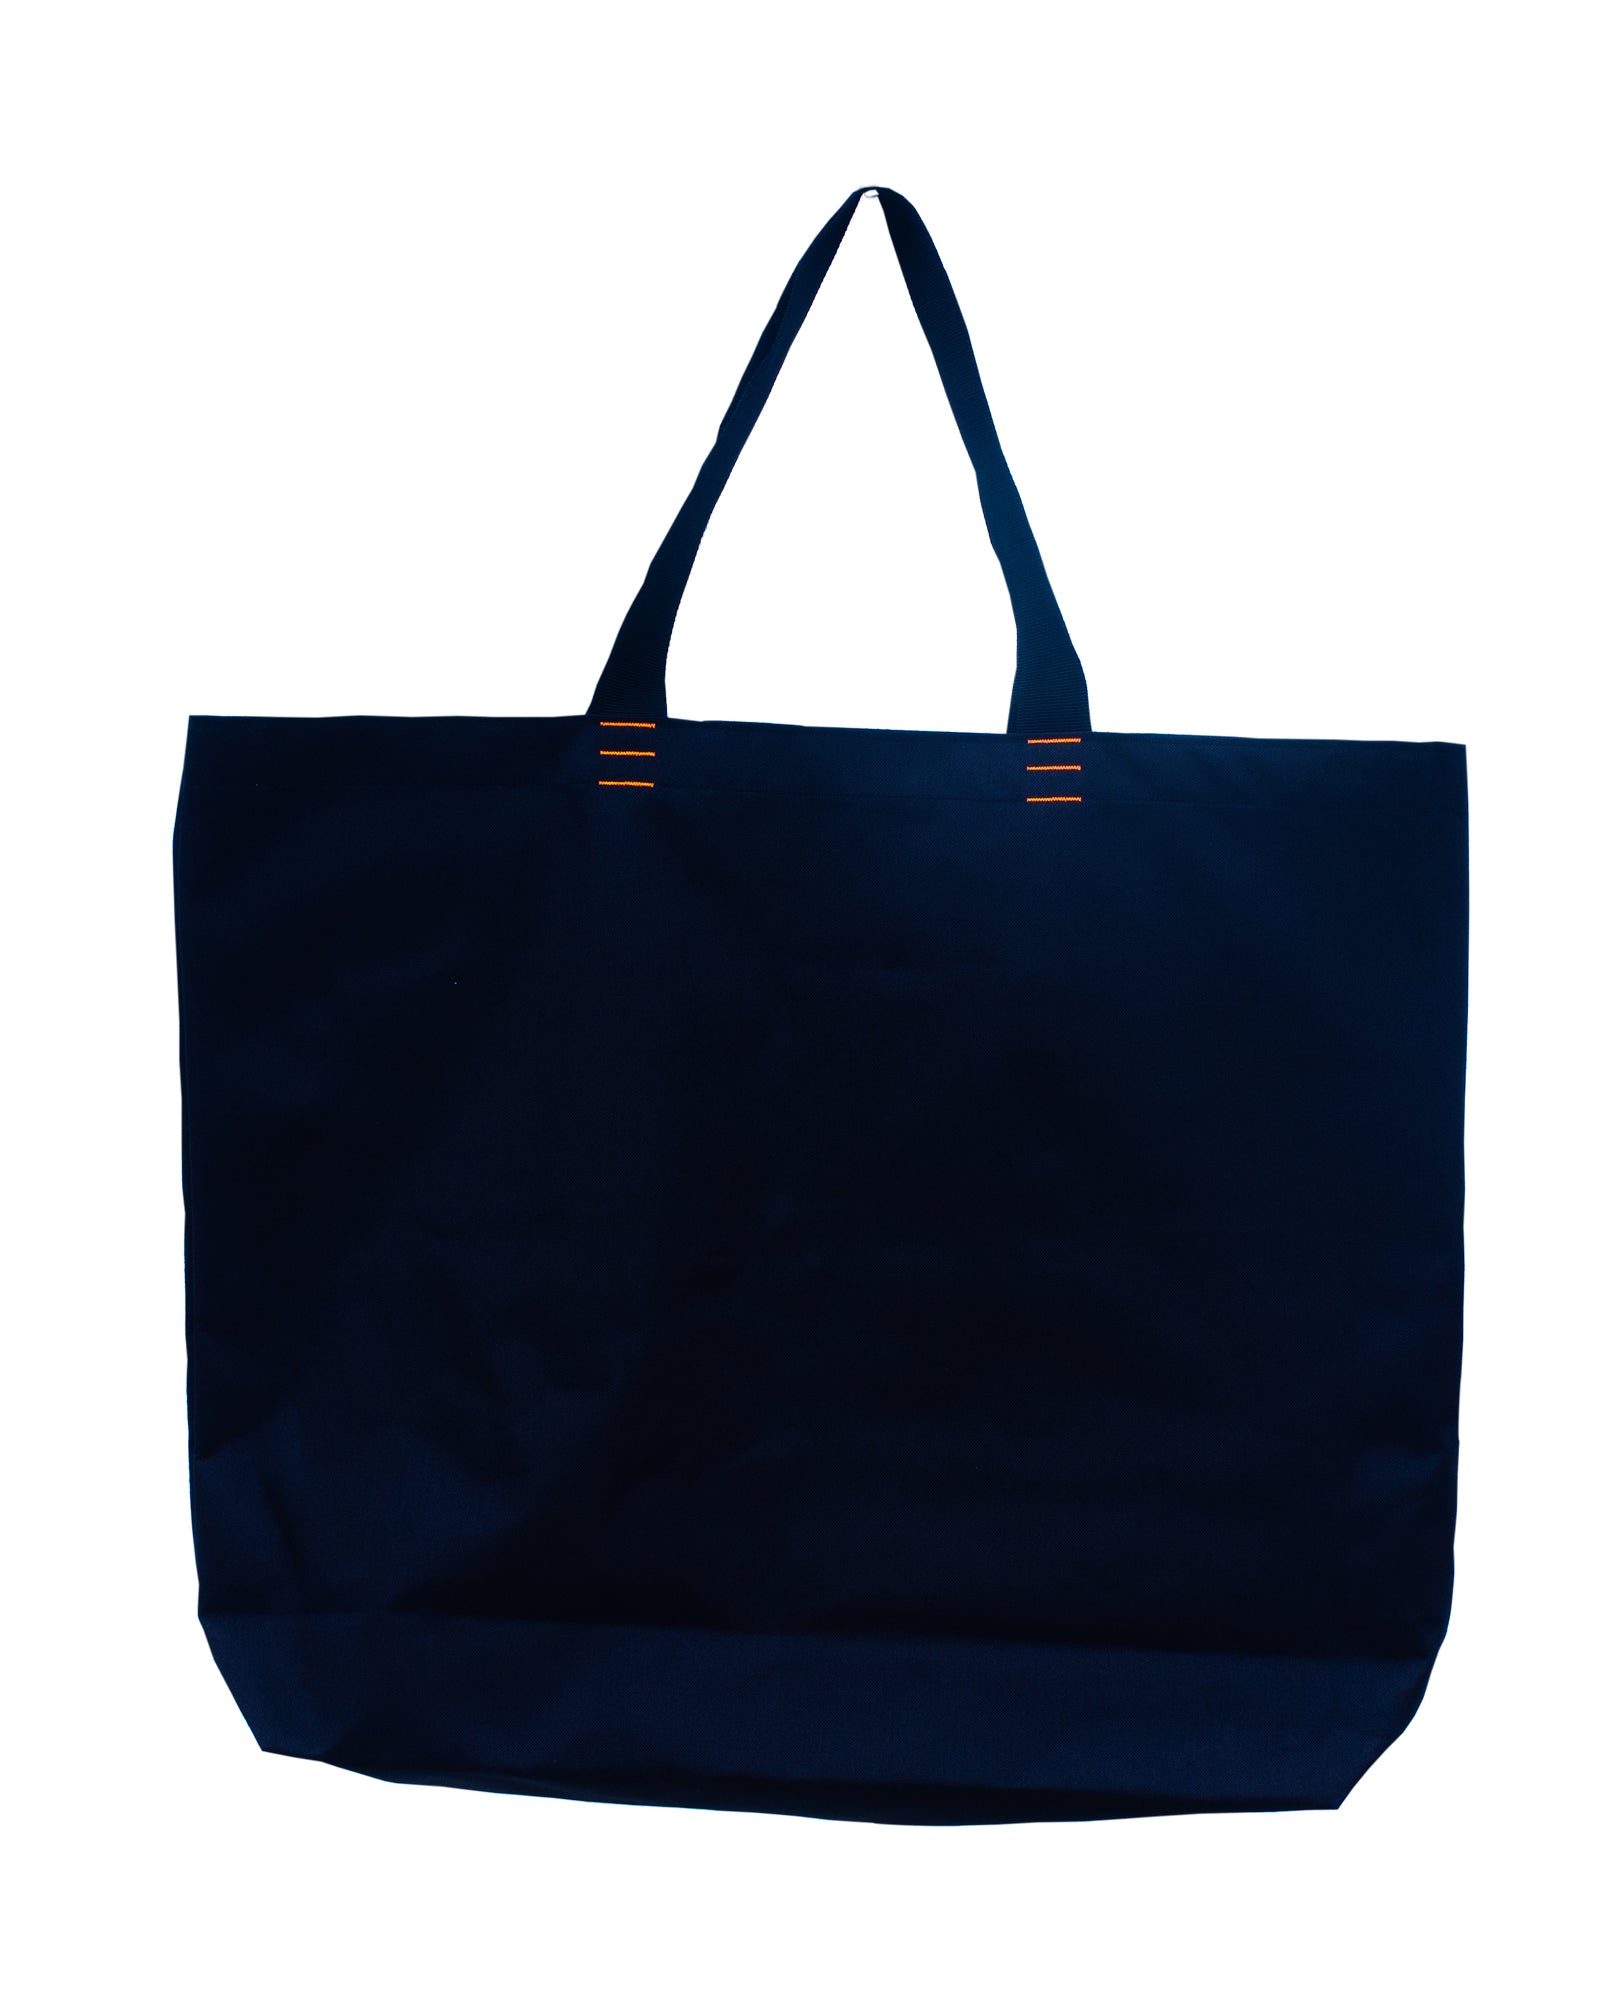 BIGBLACK BAG, design No 5